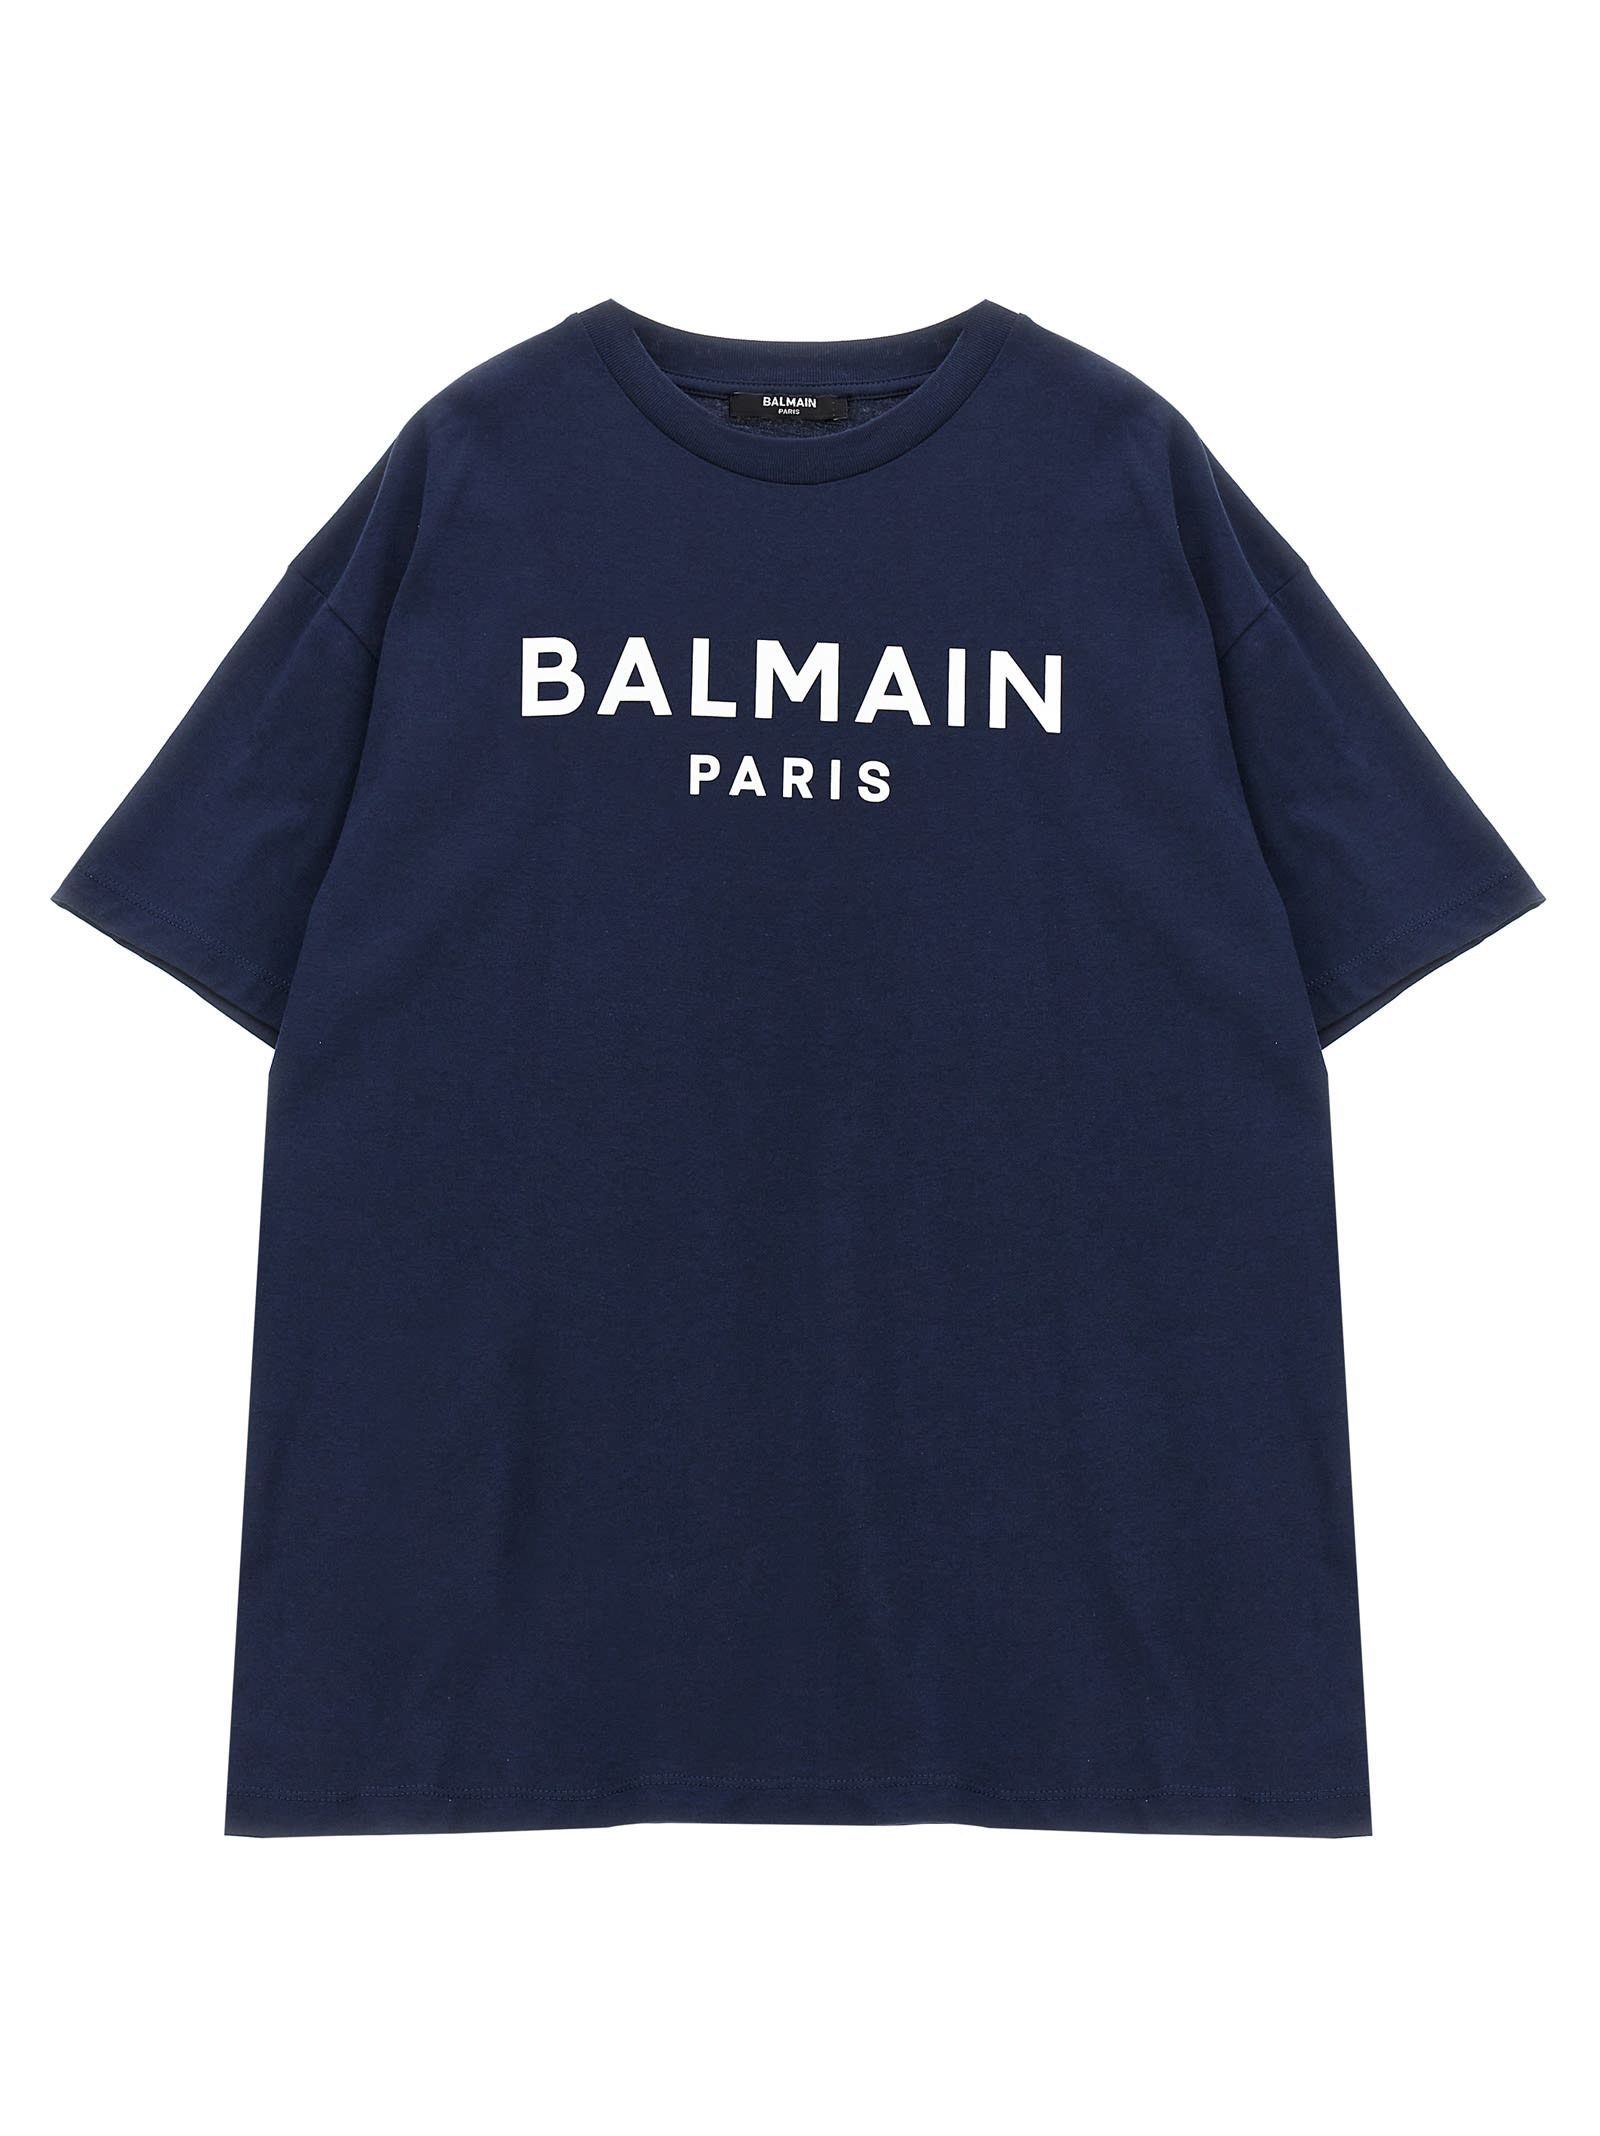 Balmain Kids' Logo T-shirt In Air Force Blue